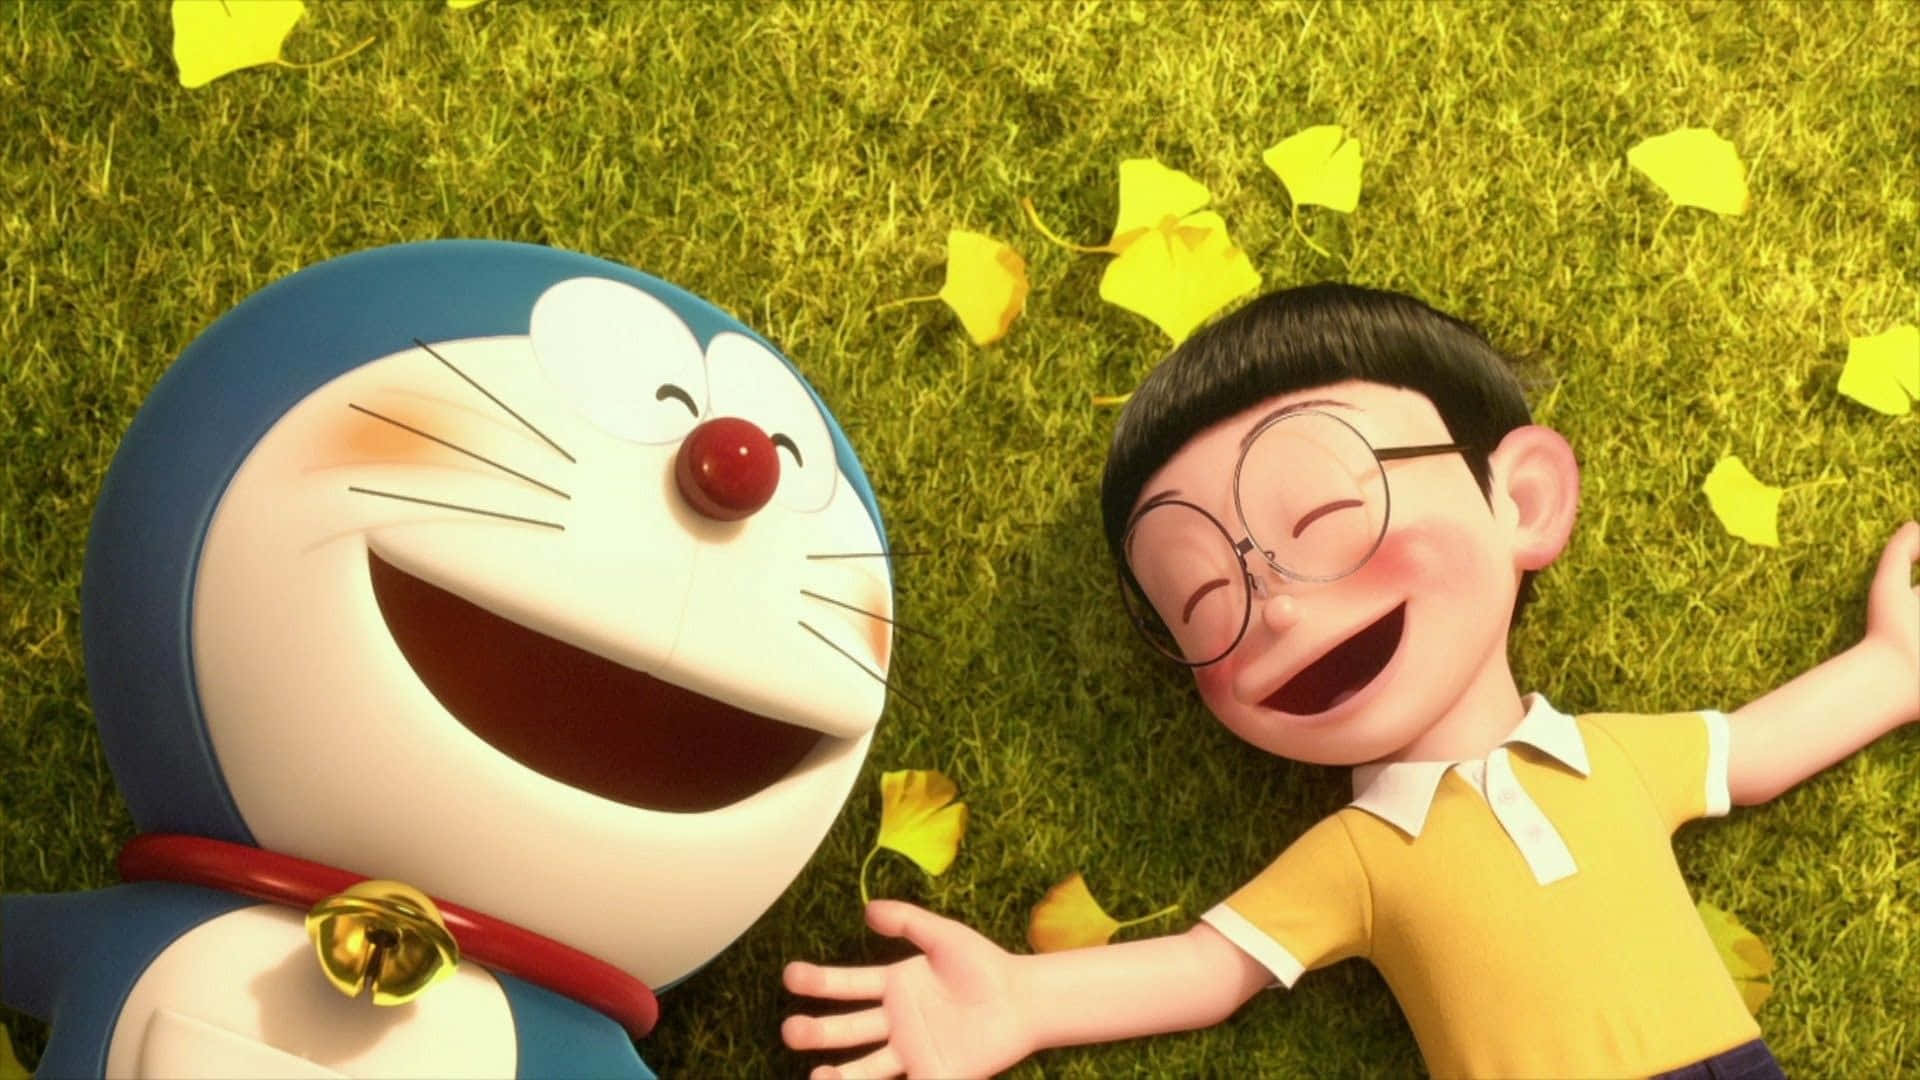 Doraemonein Junge Und Ein Mädchen Liegen Auf Dem Gras.